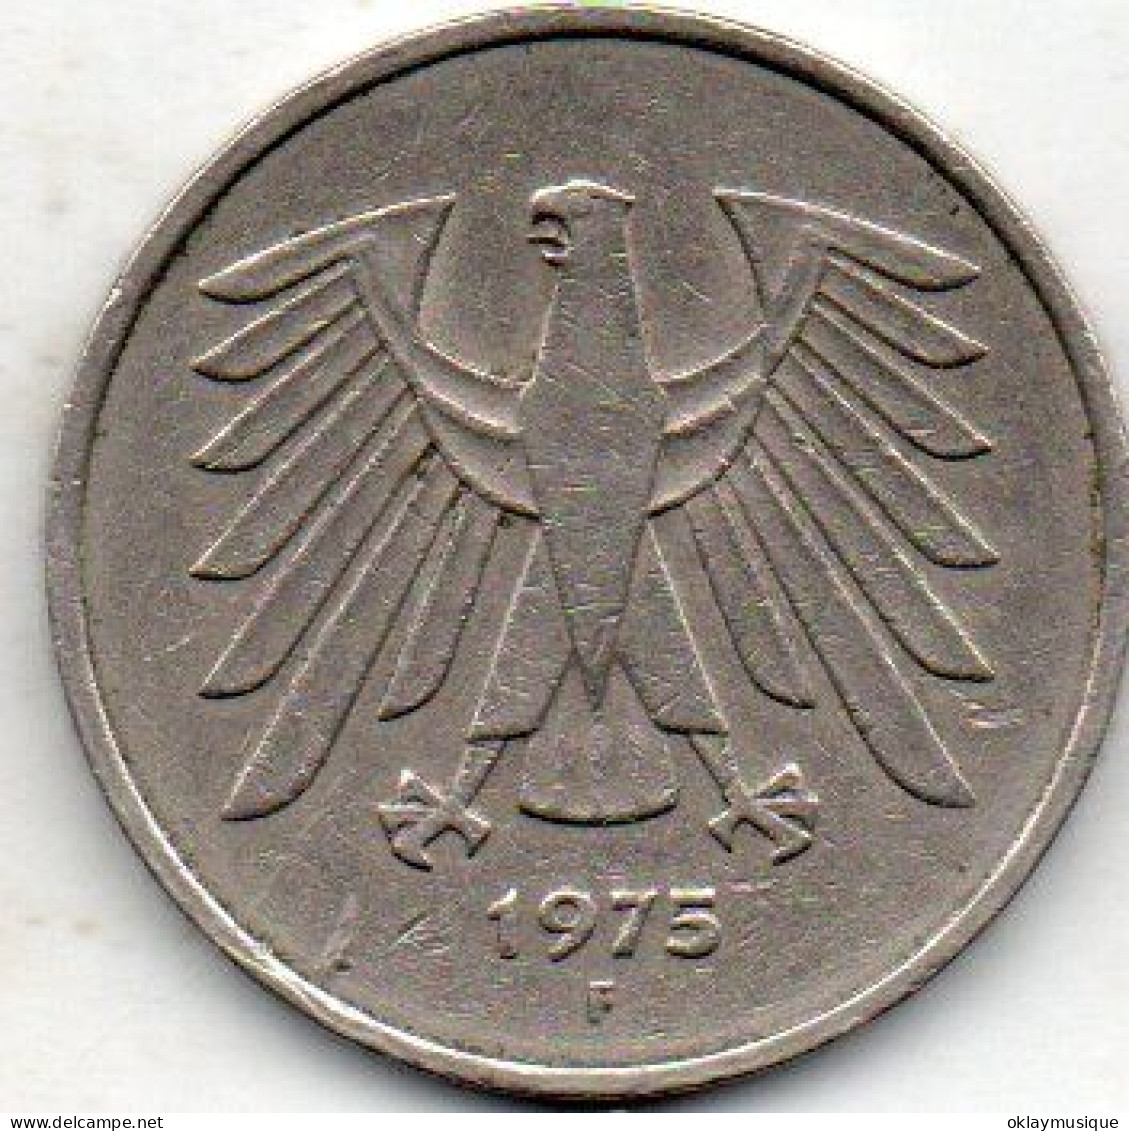 5 Deutsches Mark 1975F - 5 Marchi